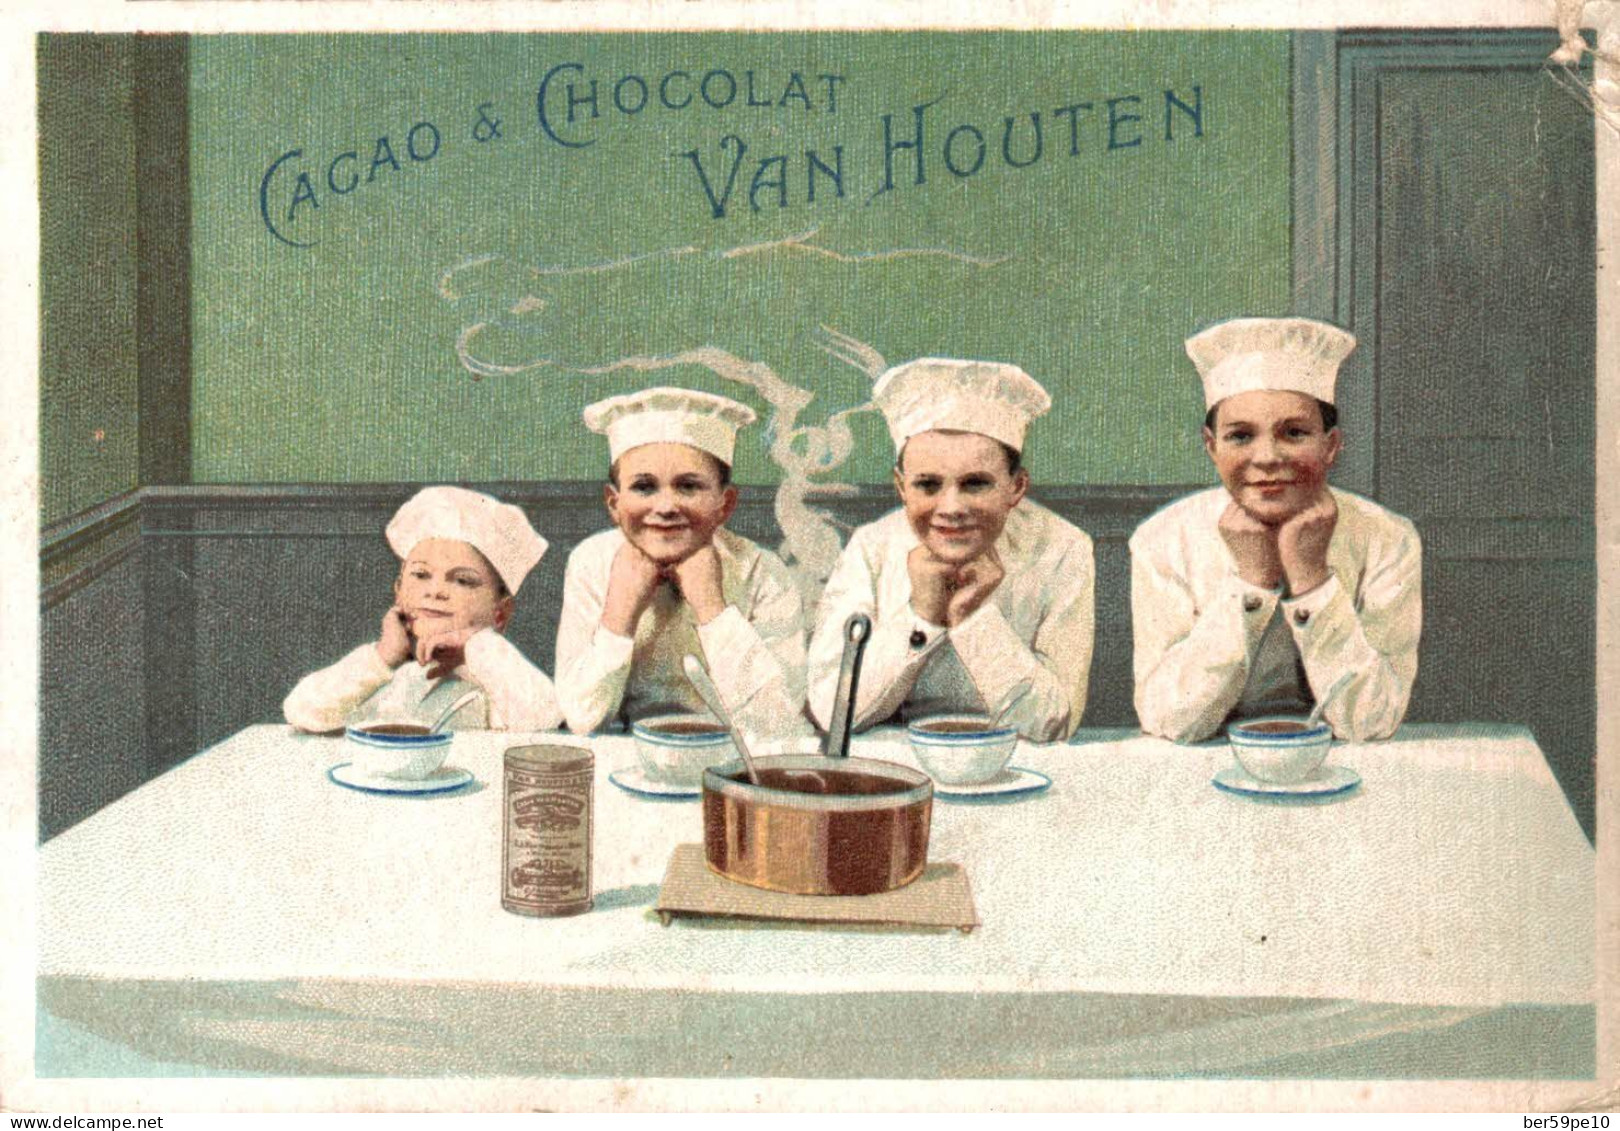 CHROMO CACAO & CHOCOLAT VAN HOUTEN 4 PETITS MARMITONS - Van Houten